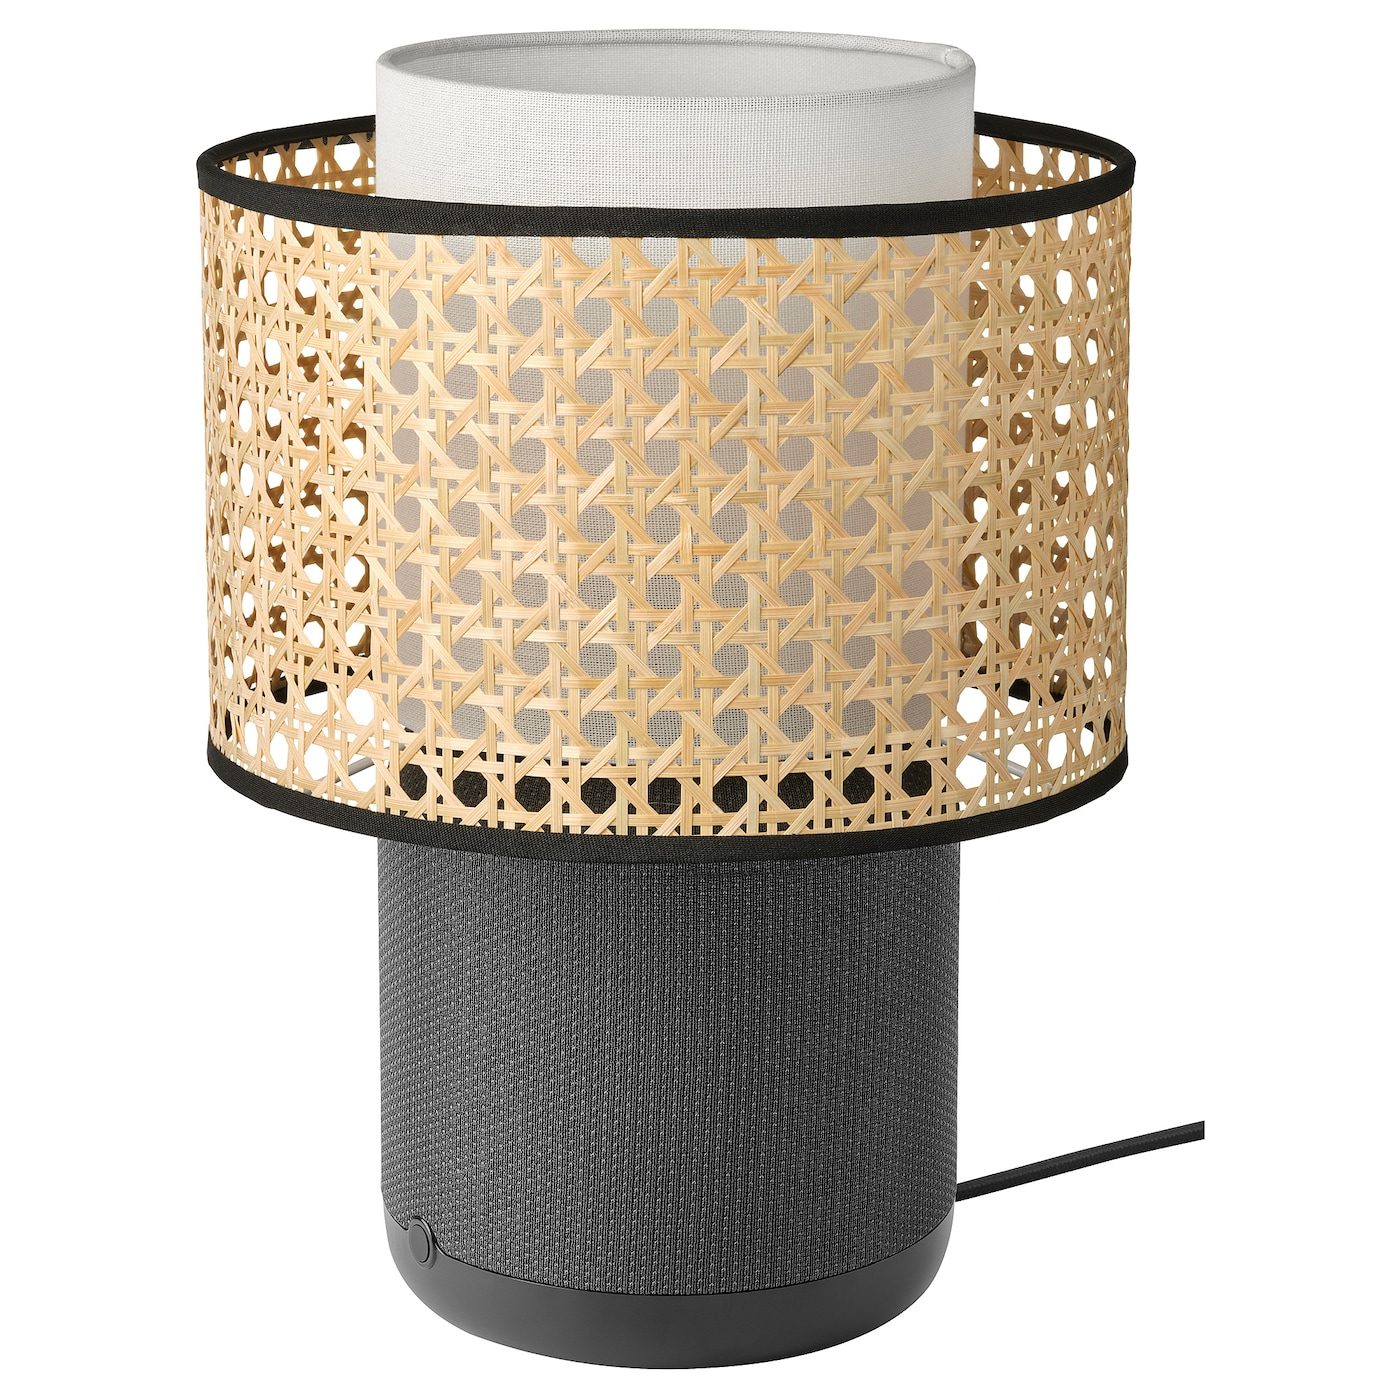 SYMFONISK shade for speaker lamp base, glass/black - IKEA